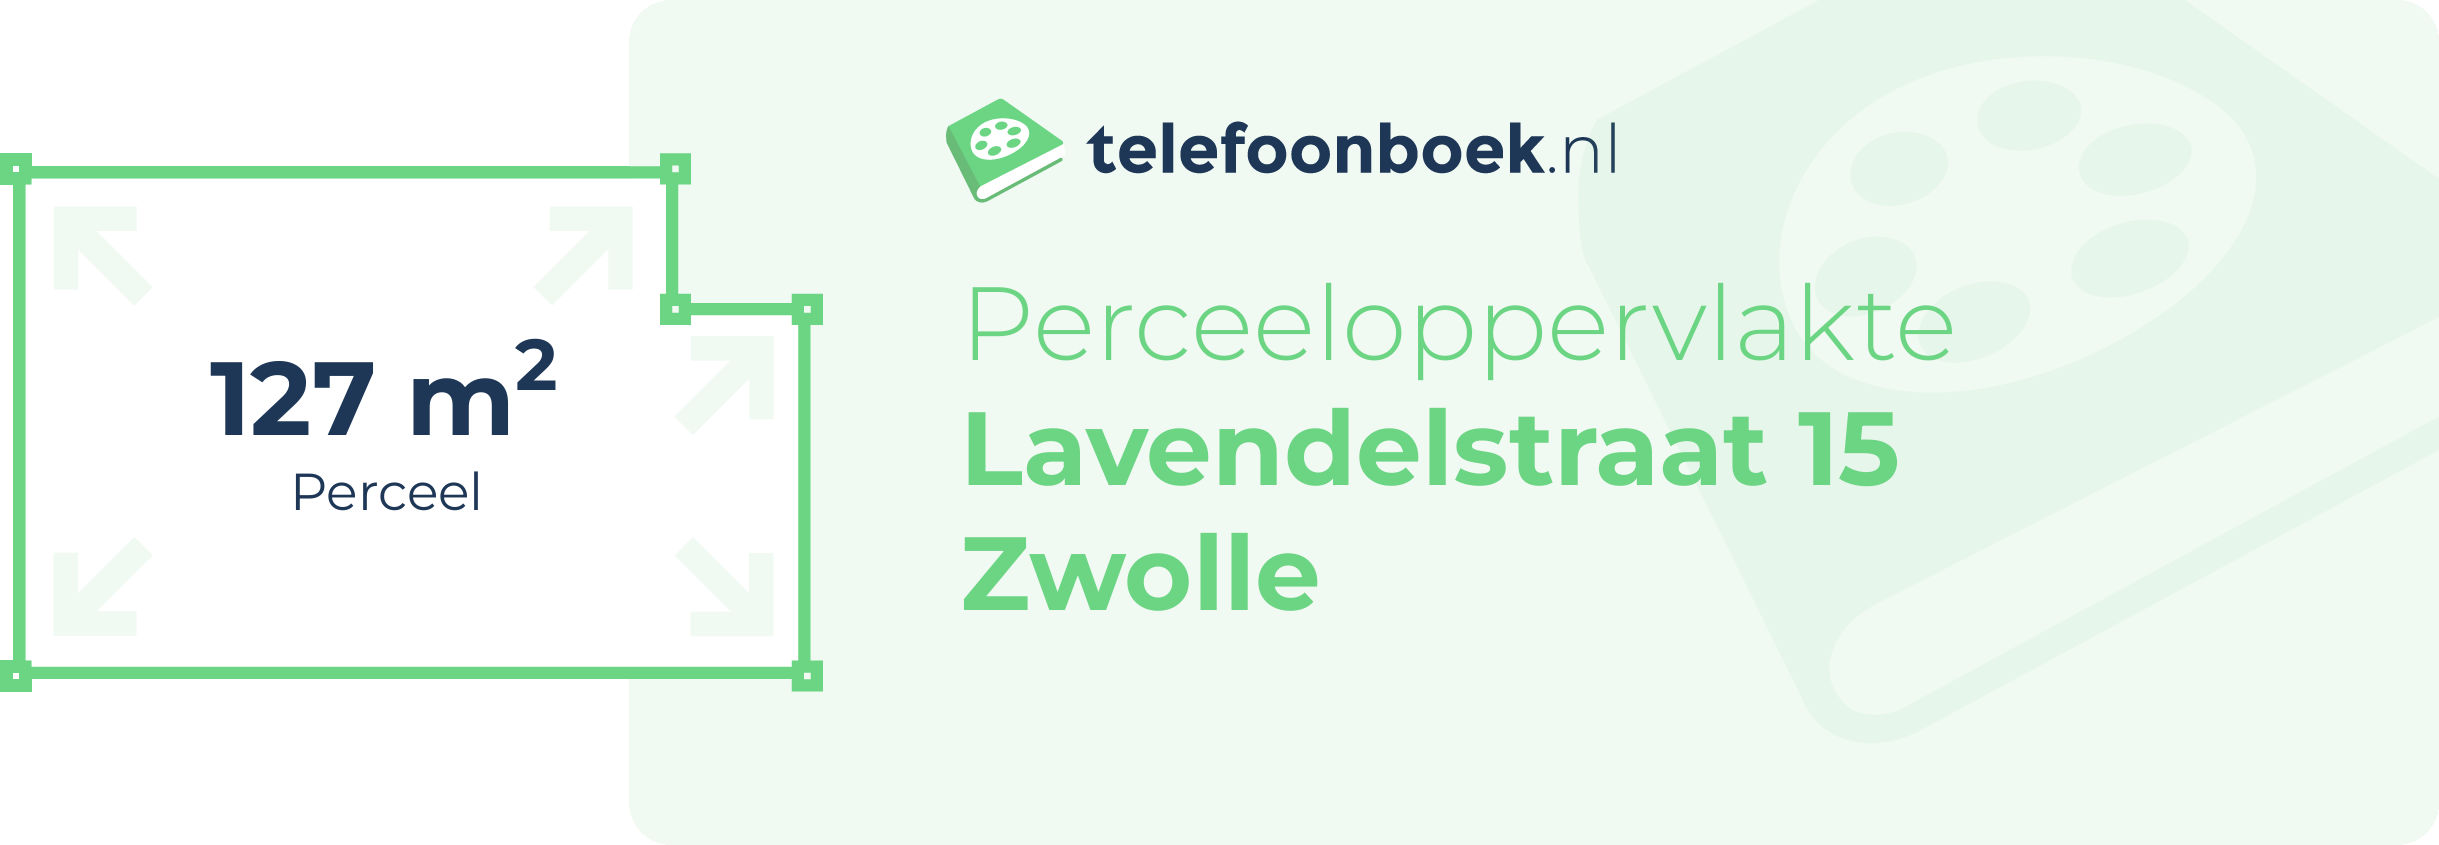 Perceeloppervlakte Lavendelstraat 15 Zwolle